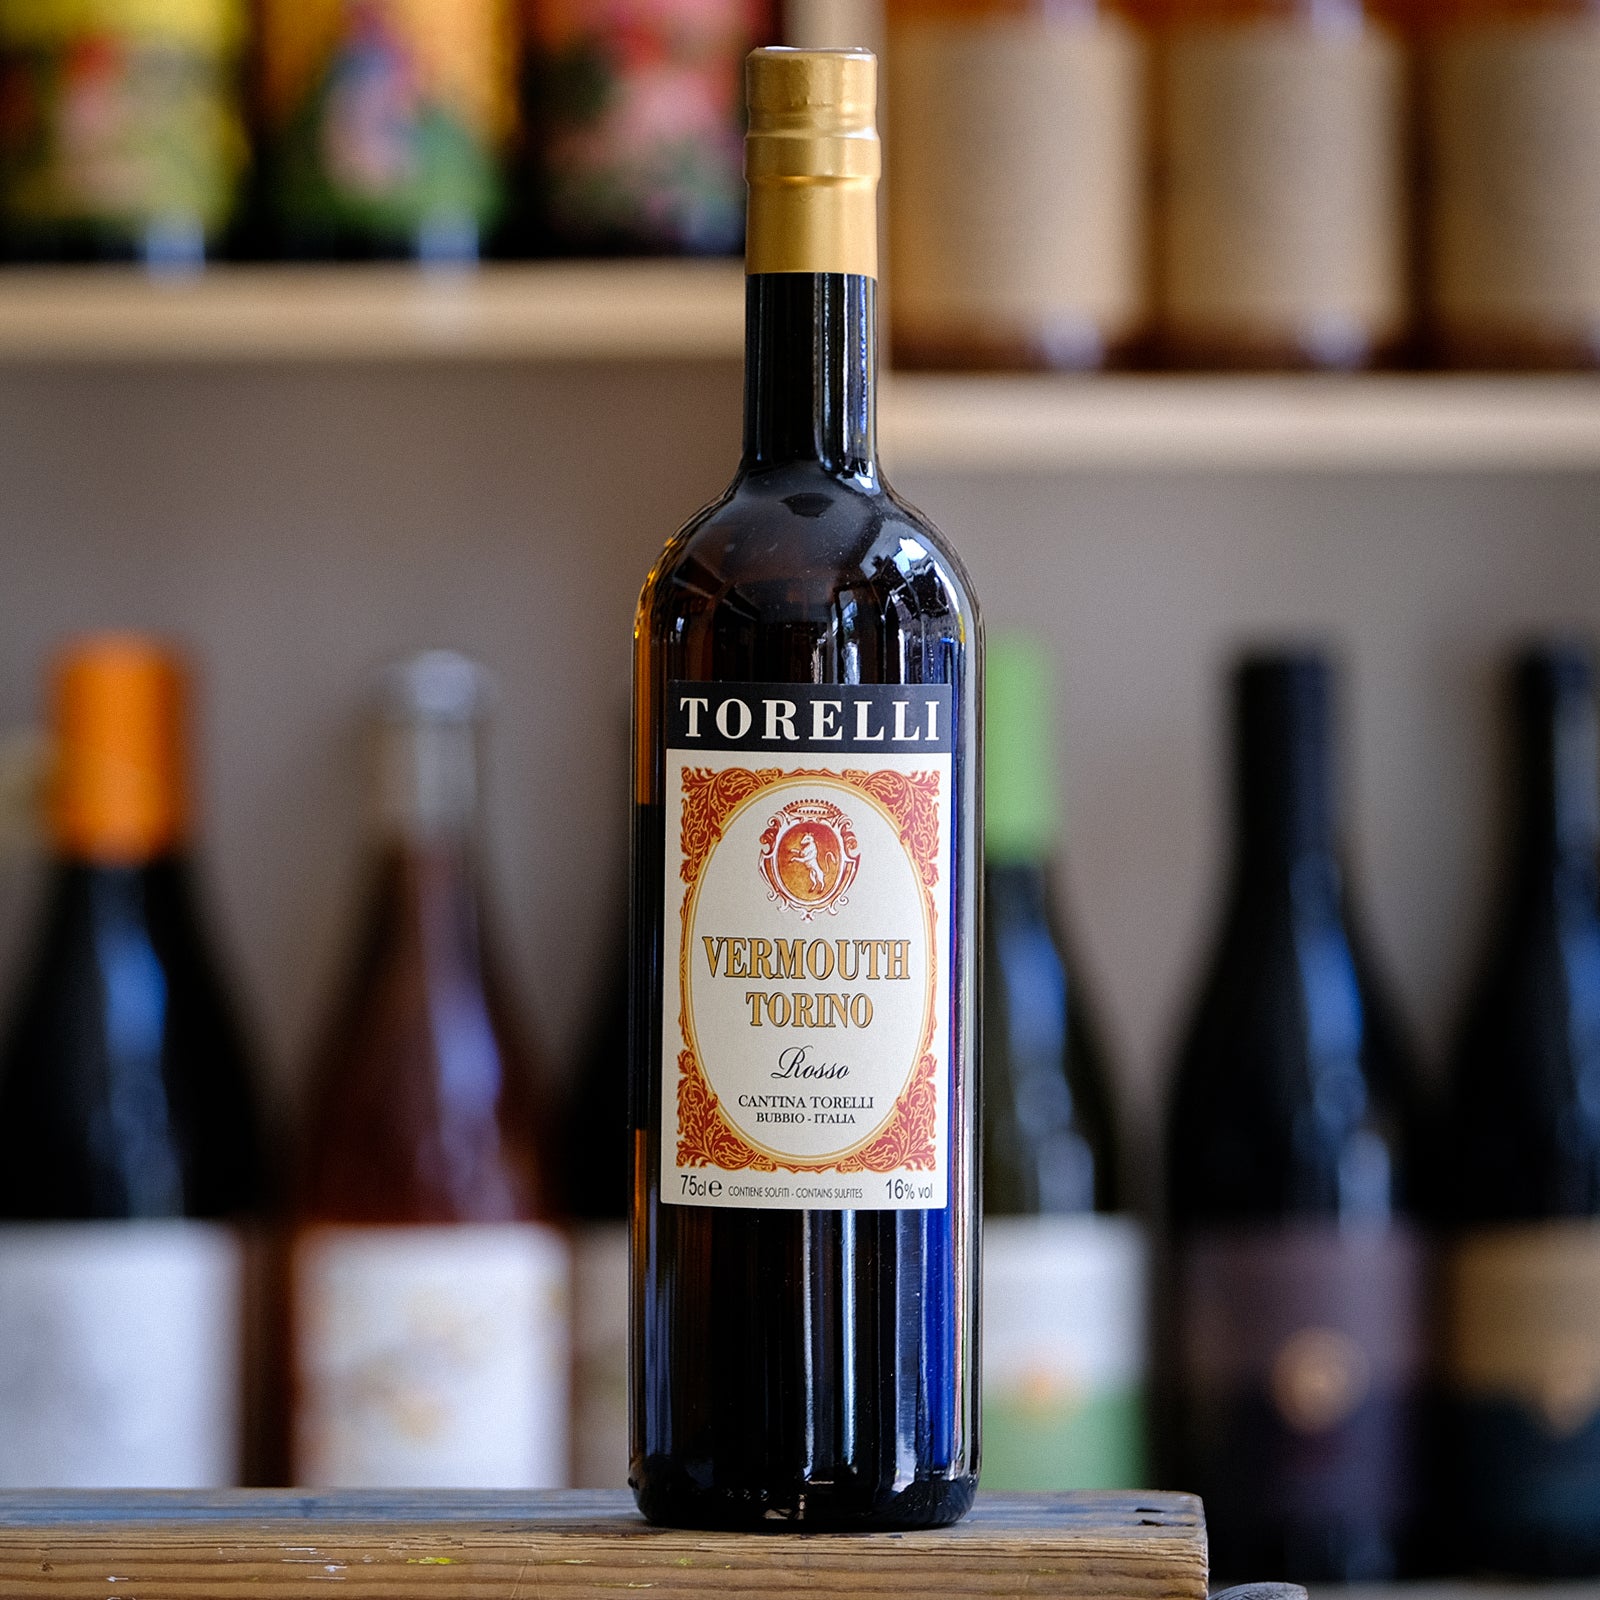 Vermouth Torino Rosso